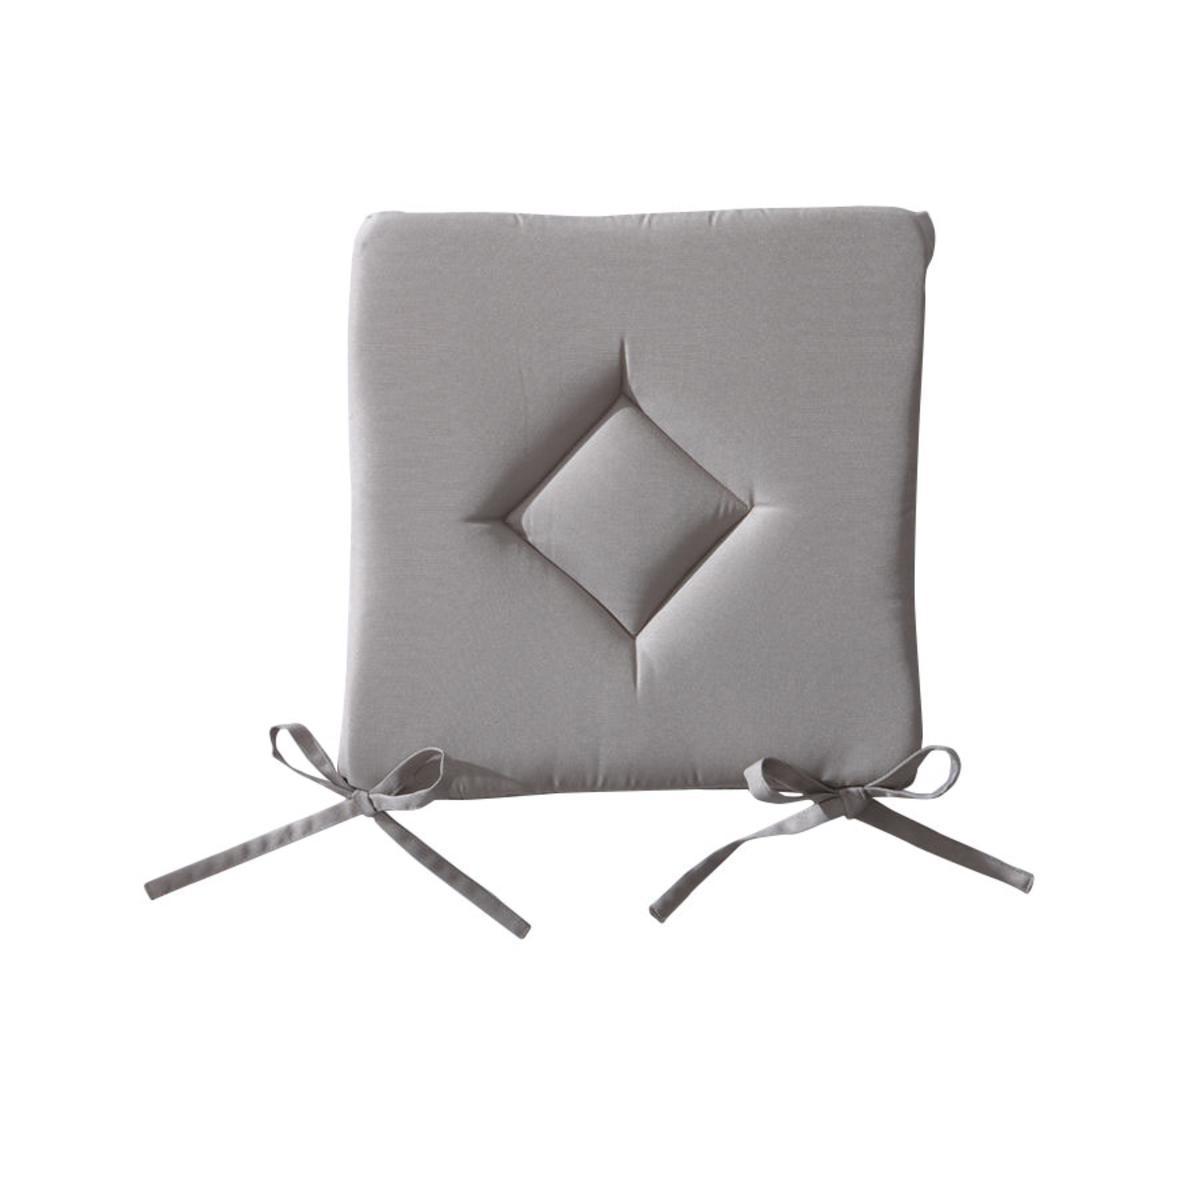 Galette de chaise en polyester - 40 cm x 40 cm x 3 cm - Beige